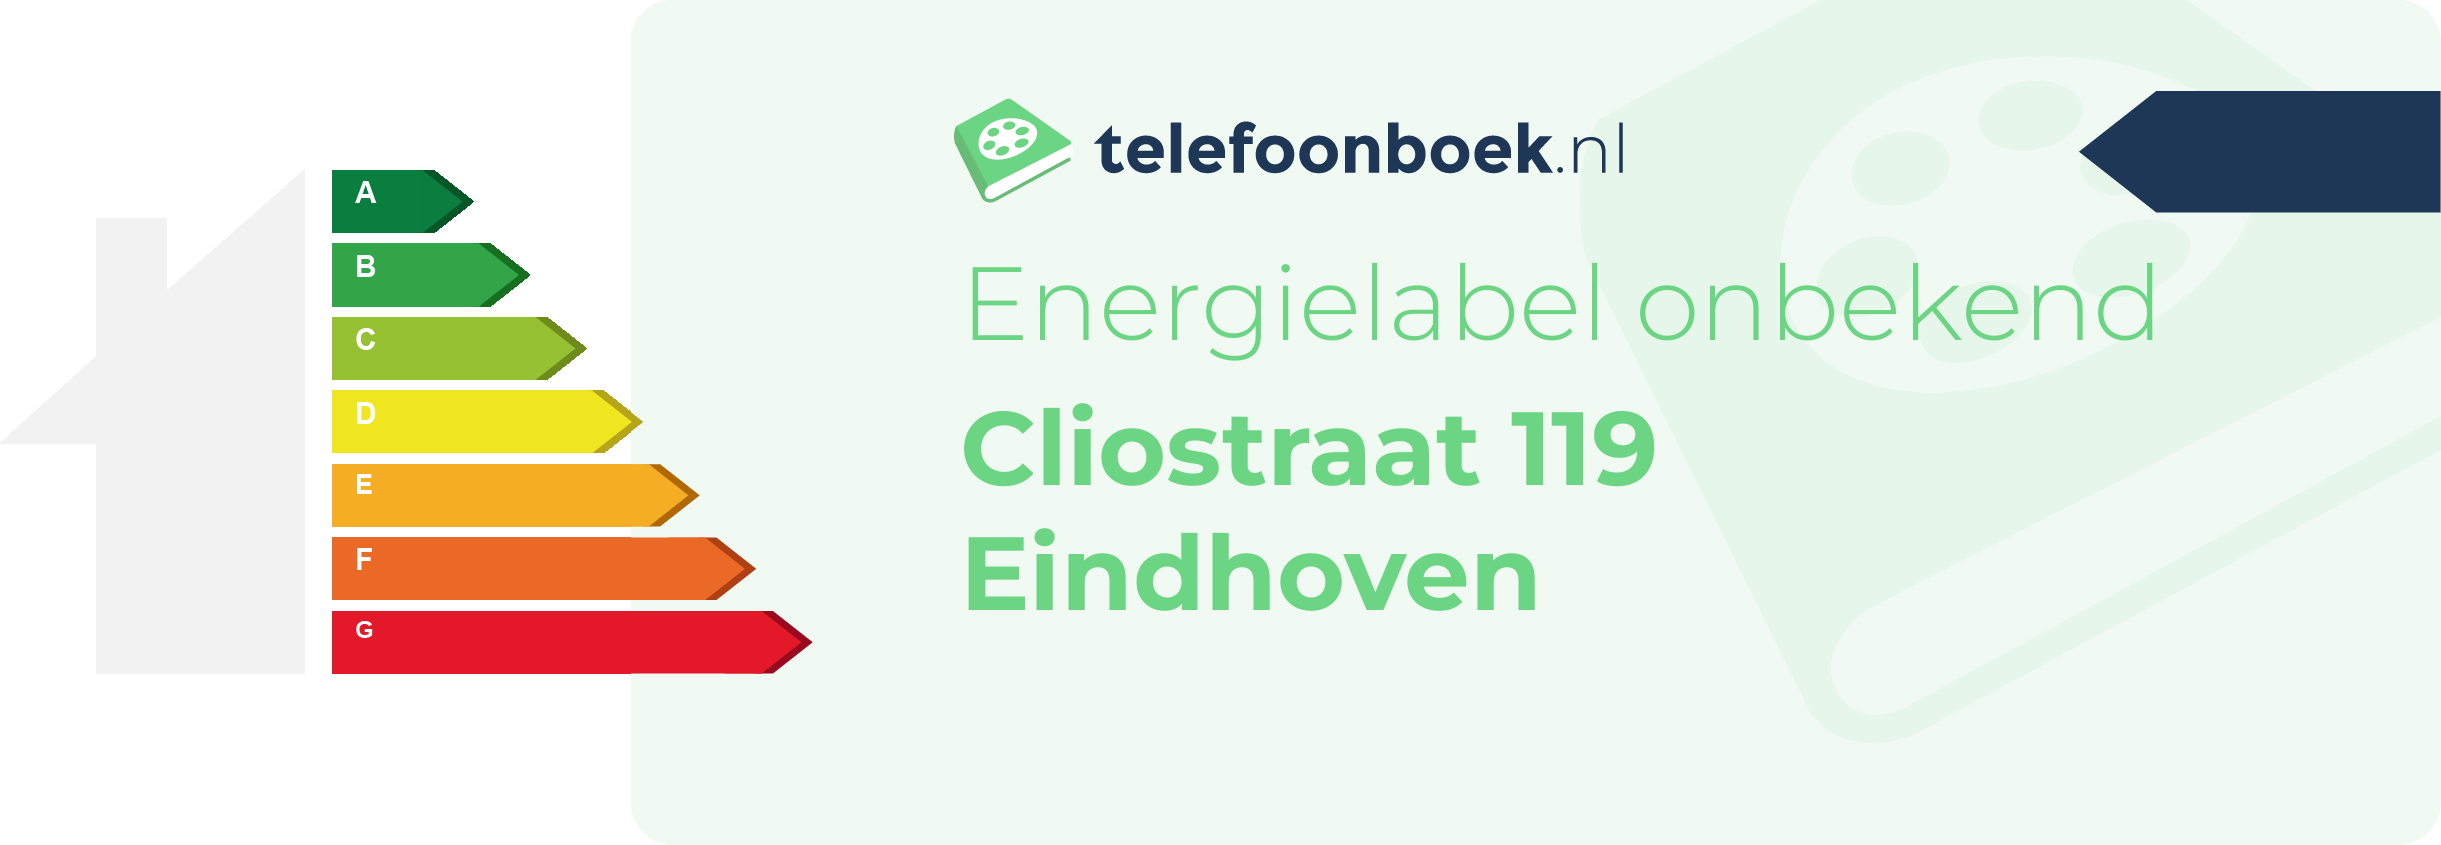 Energielabel Cliostraat 119 Eindhoven